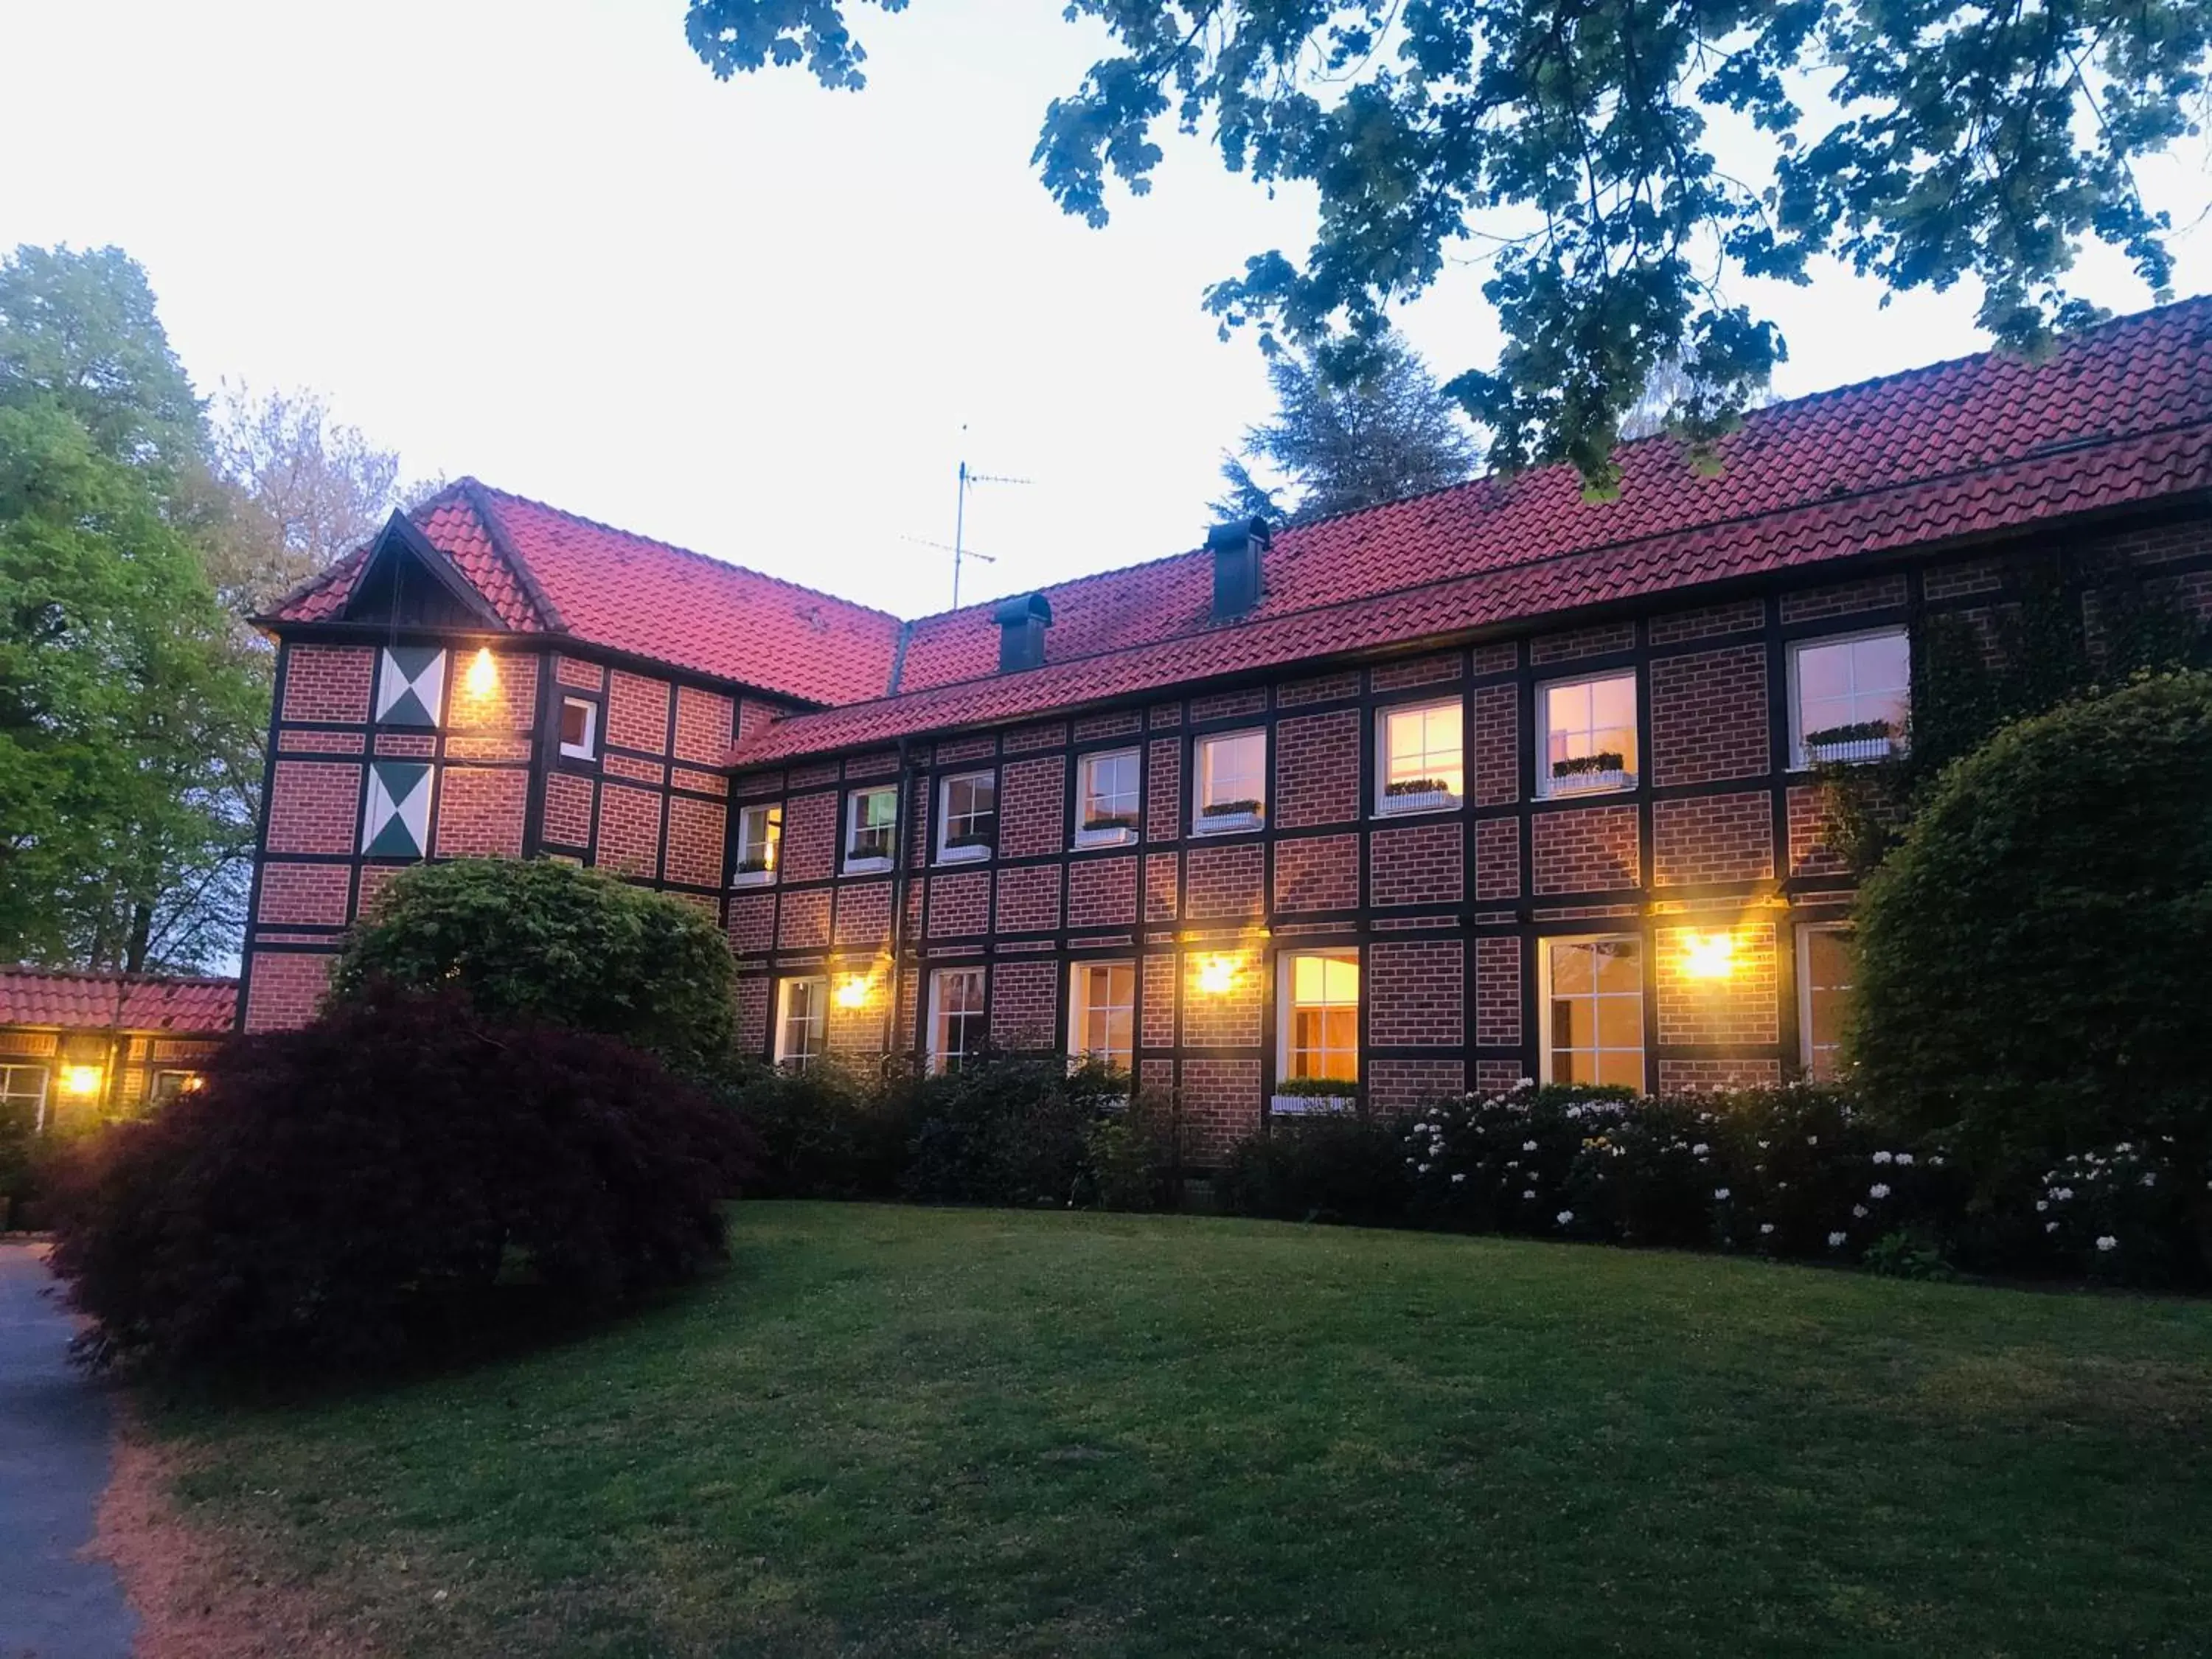 Property Building in Landhaus Eggert